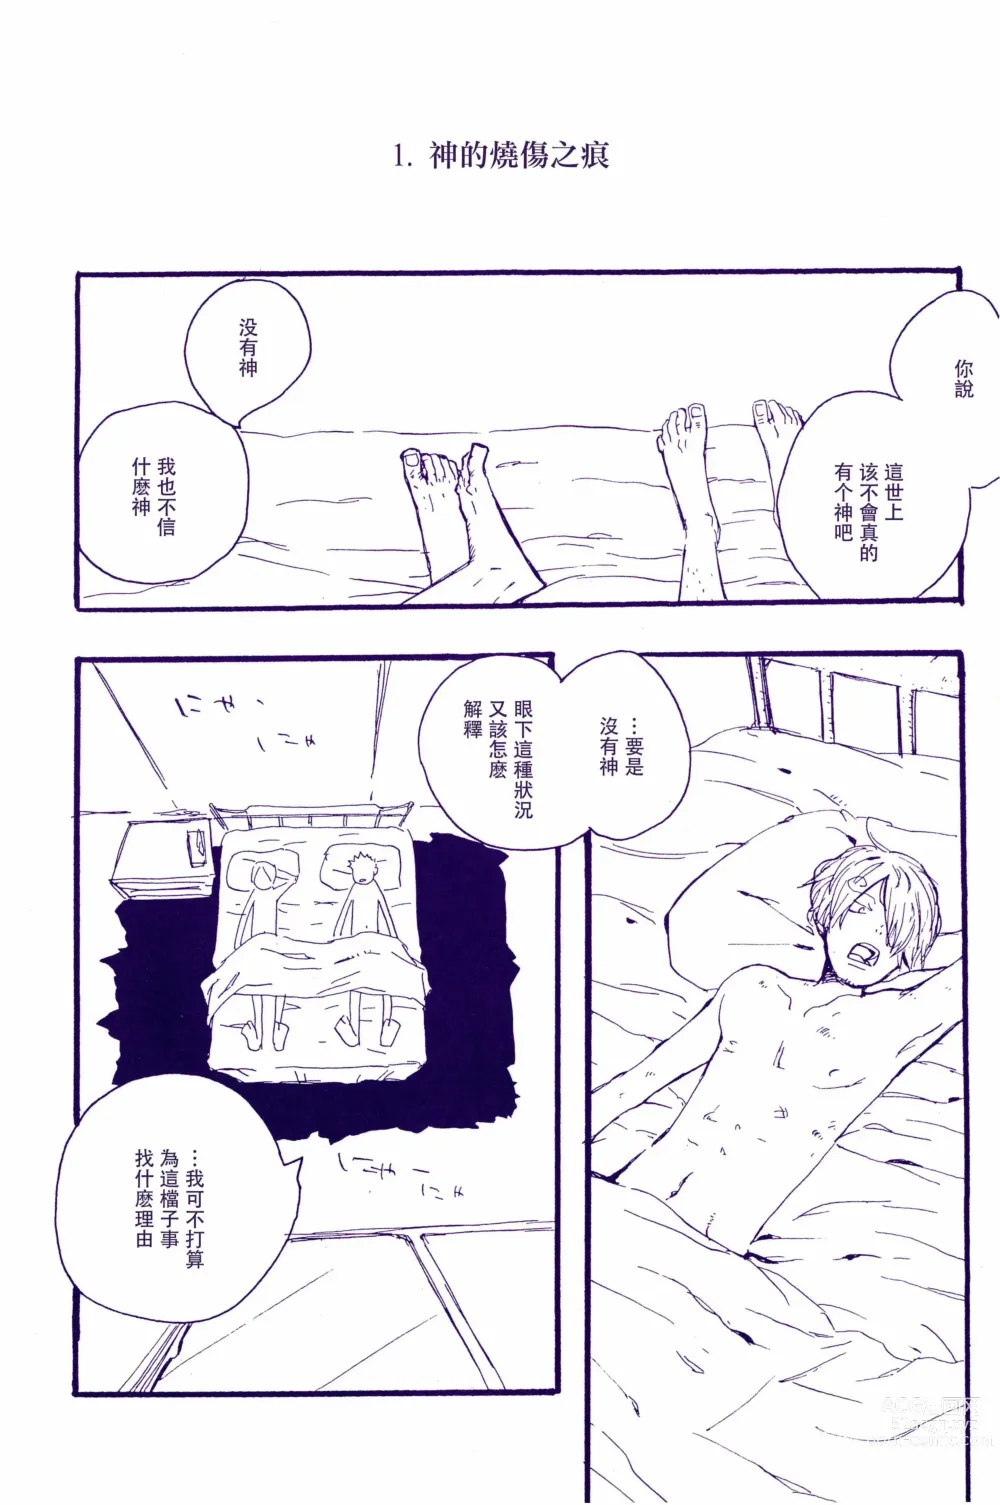 Page 6 of doujinshi 神明存在吗?神明不存在吗?